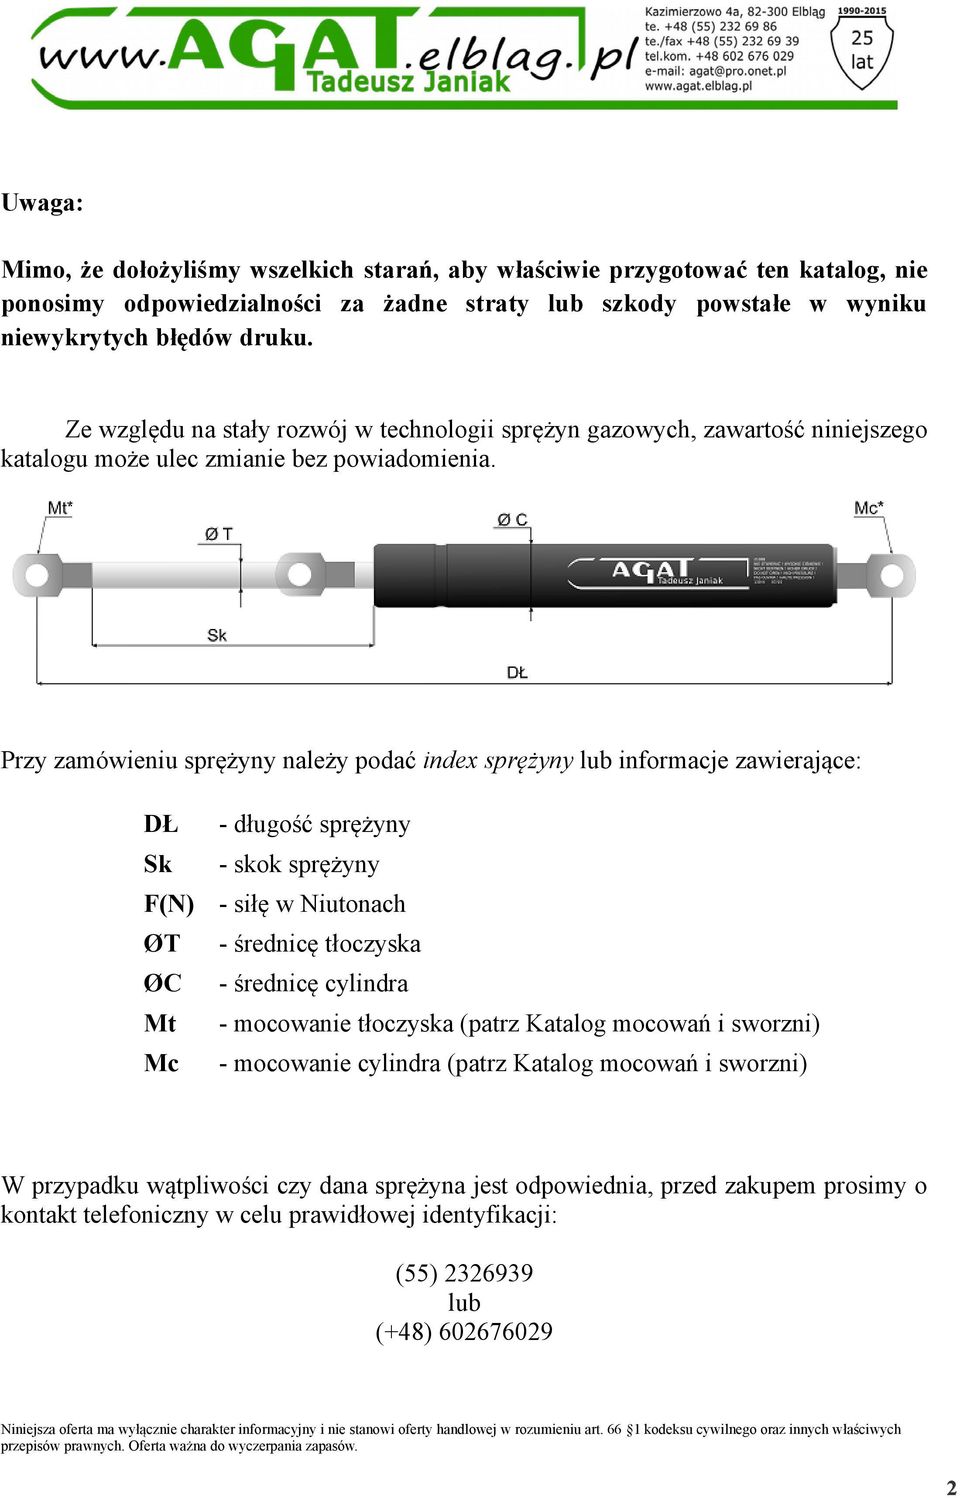 Przy zamówieniu sprężyny należy podać index sprężyny lub informacje zawierające: - długość sprężyny - skok sprężyny - siłę w Niutonach ØT - średnicę tłoczyska ØC - średnicę cylindra - mocowanie